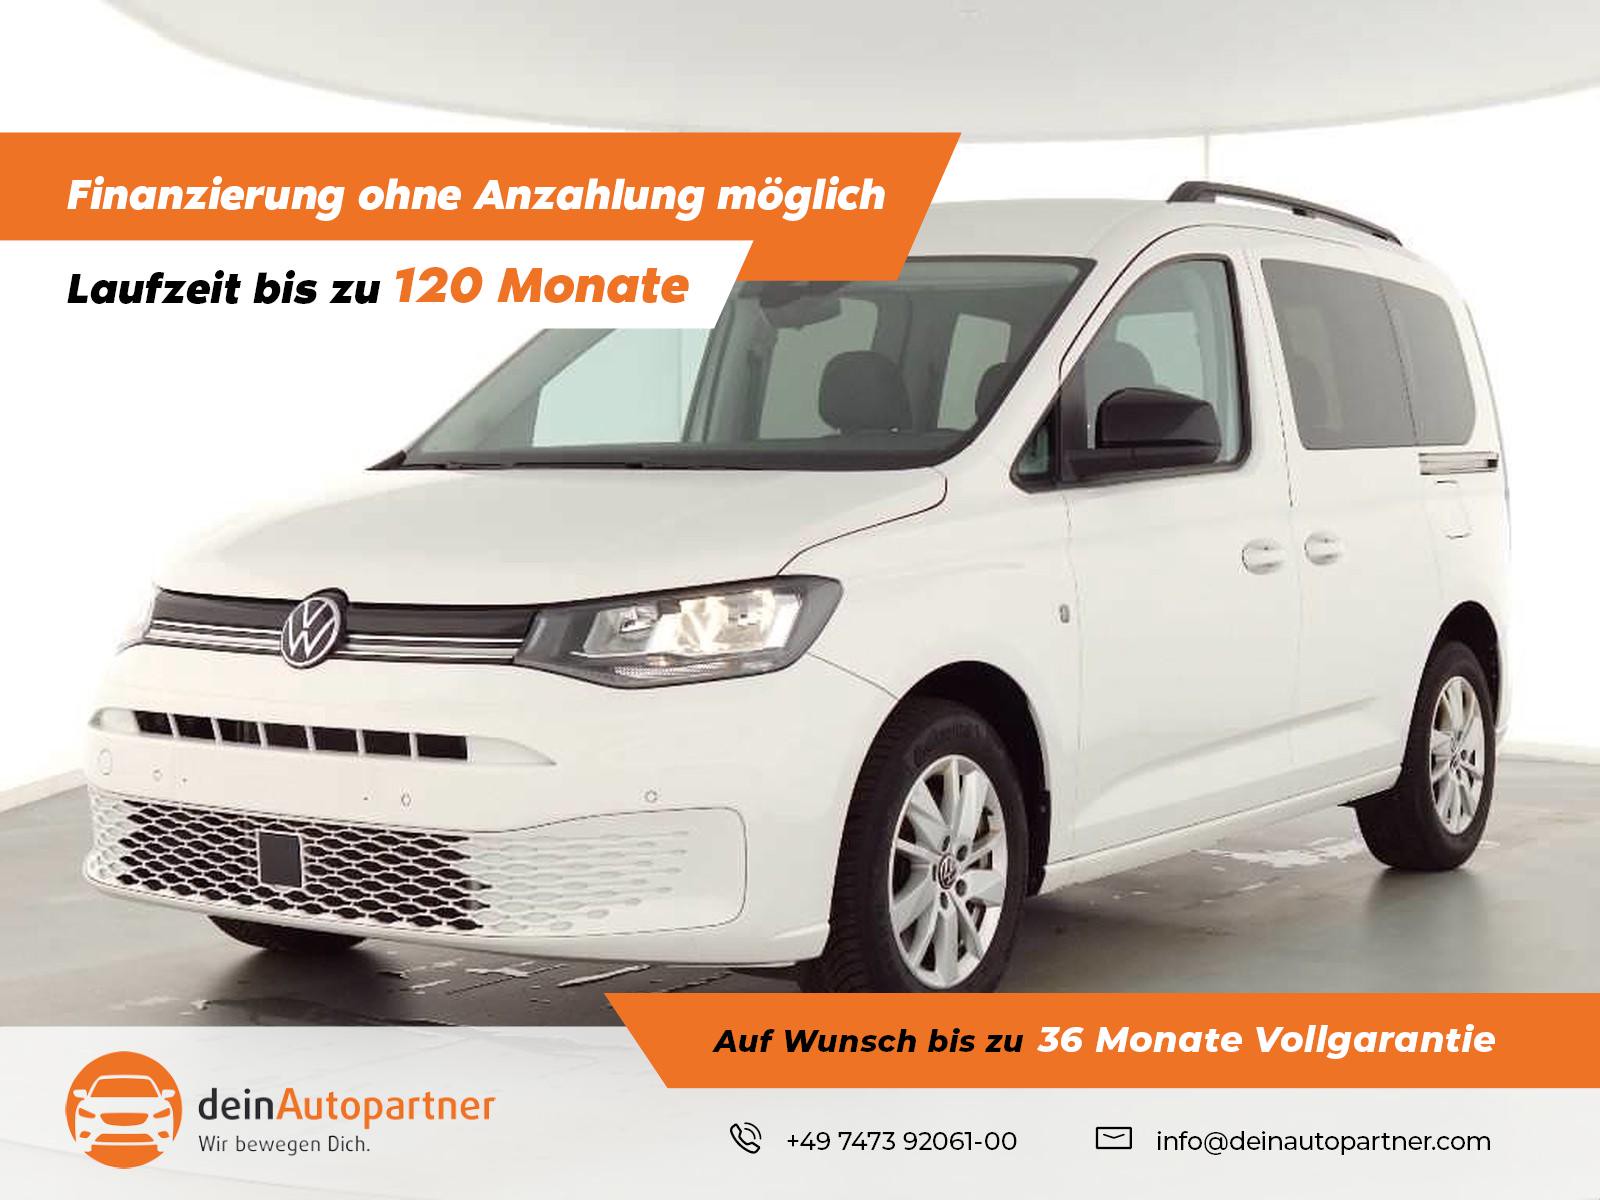 Volkswagen Caddy Life 2.0 TDI gebraucht kaufen in Mössingen Preis 28950 eur  - Int.Nr.: 1841 VERKAUFT